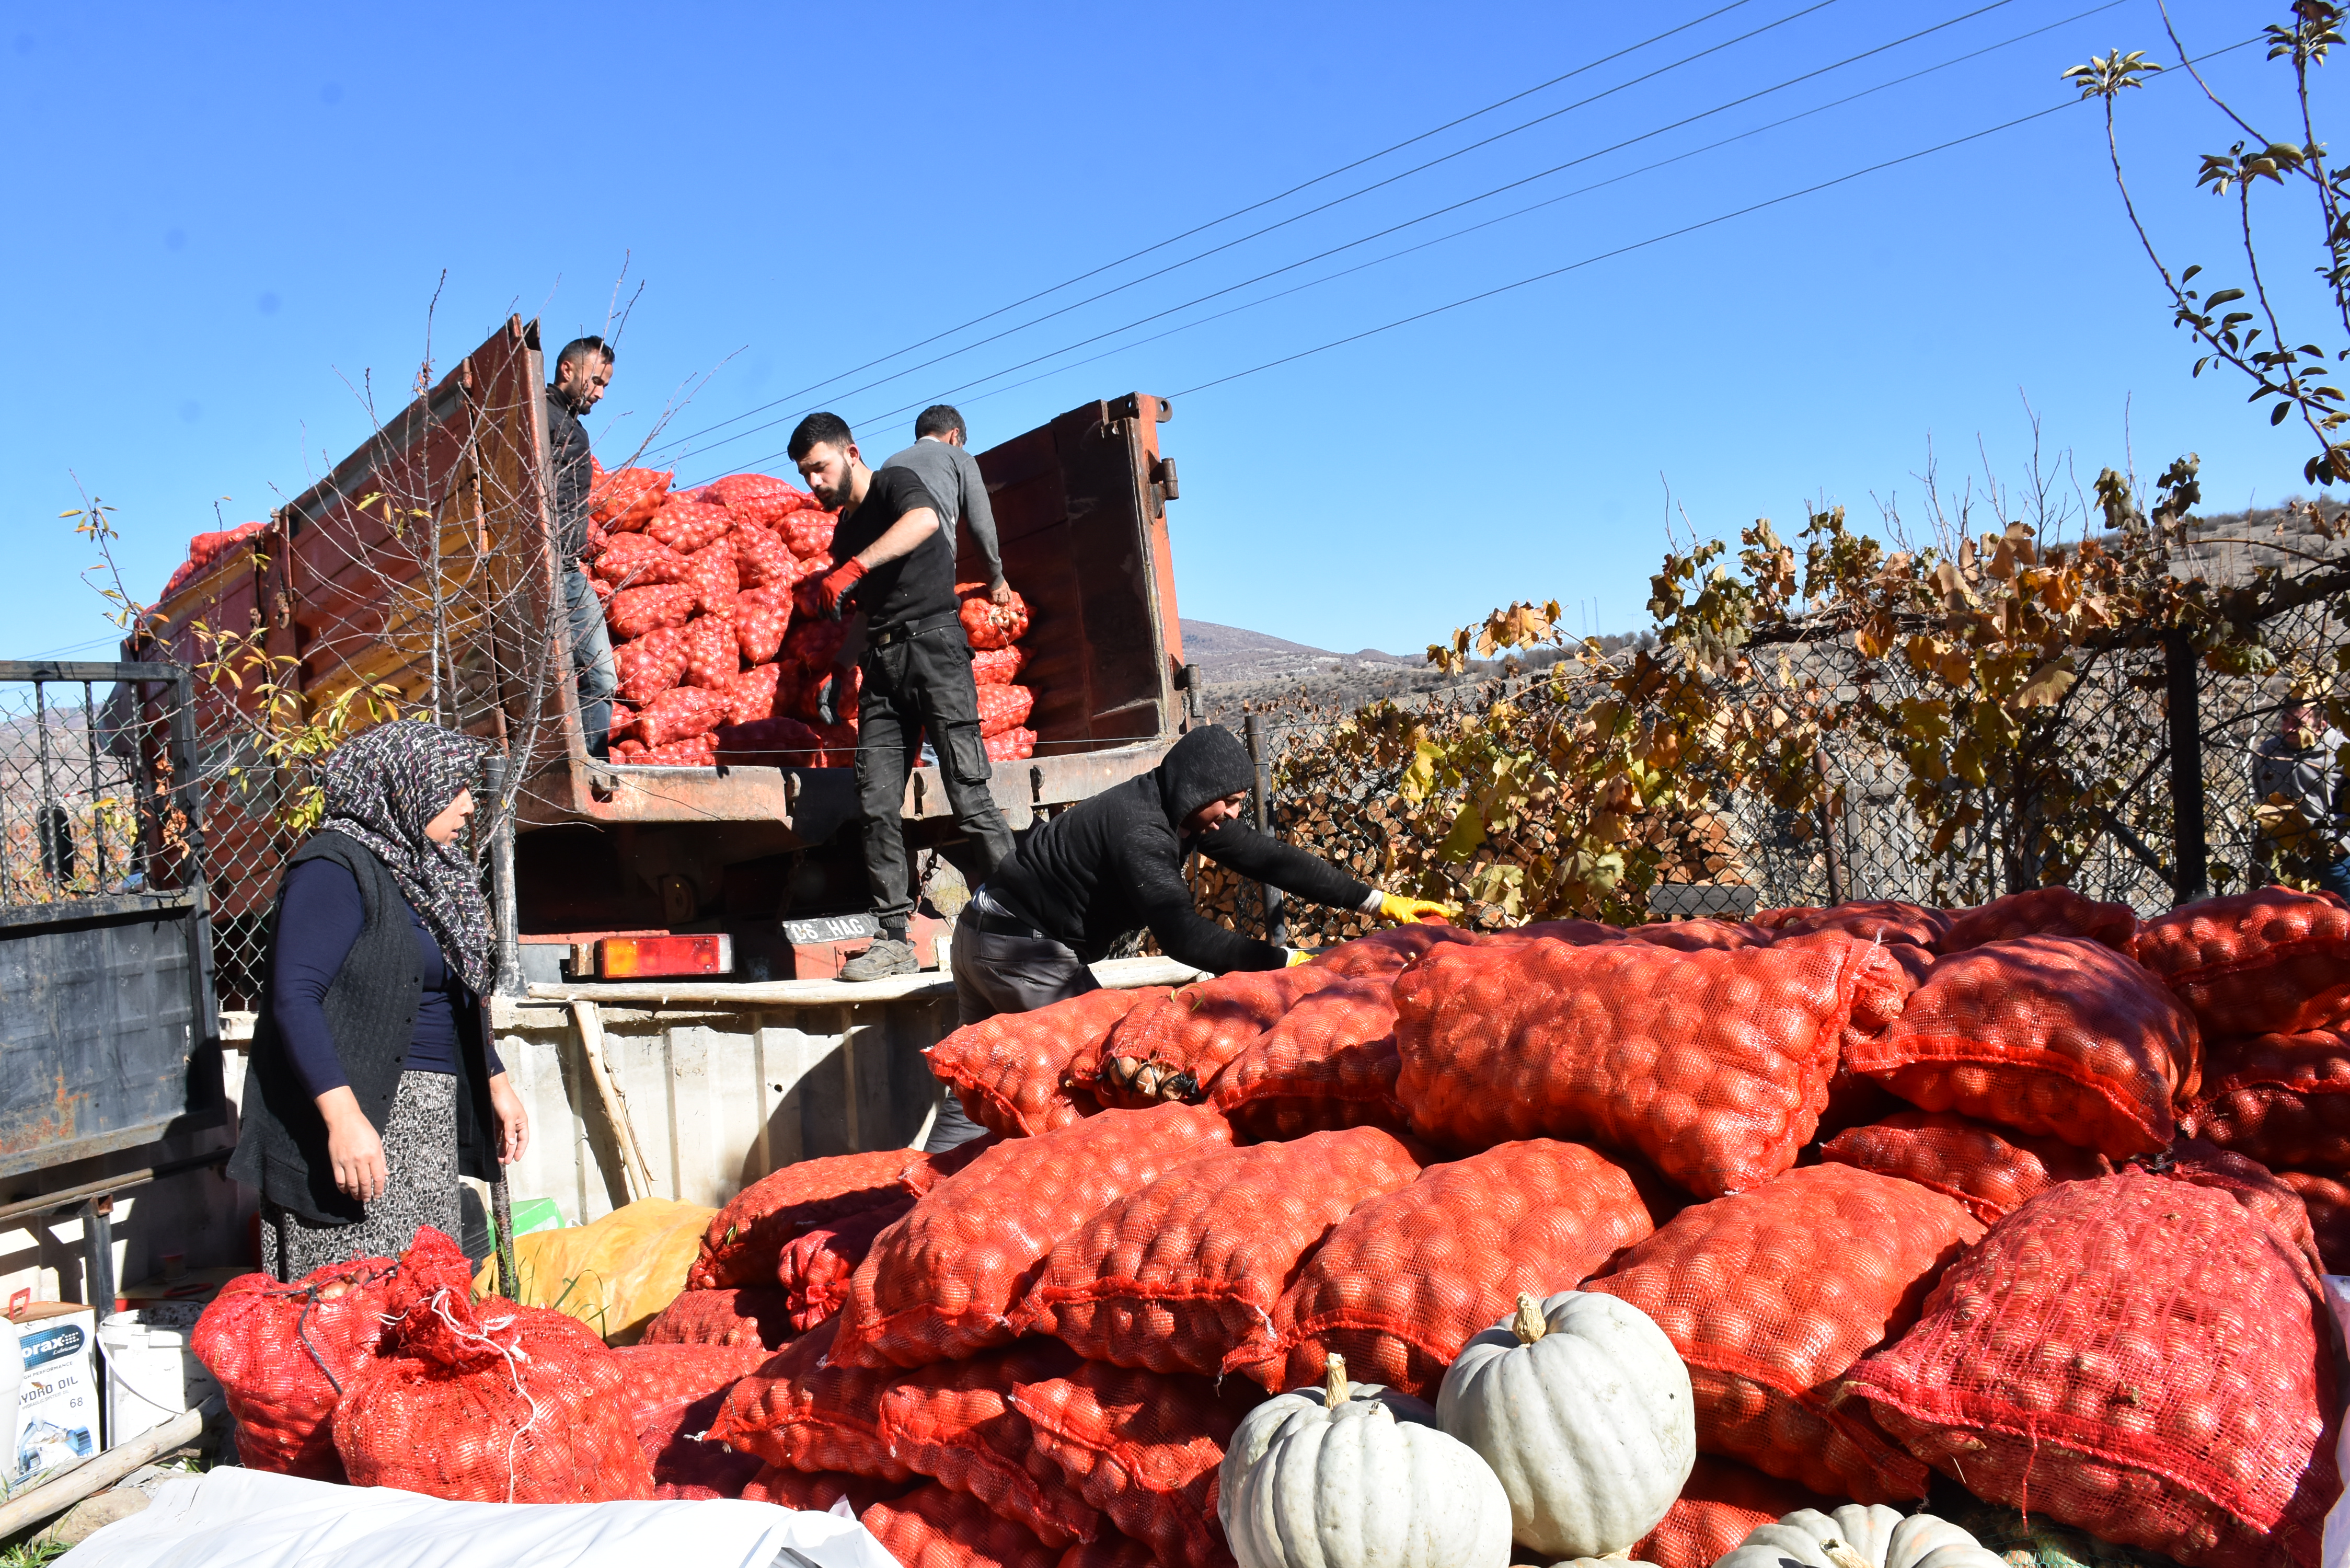 Üretici çiftçilerden satın alınan 25 ton soğan, yardıma muhtaç ailelere ücretsiz dağıtıldı.